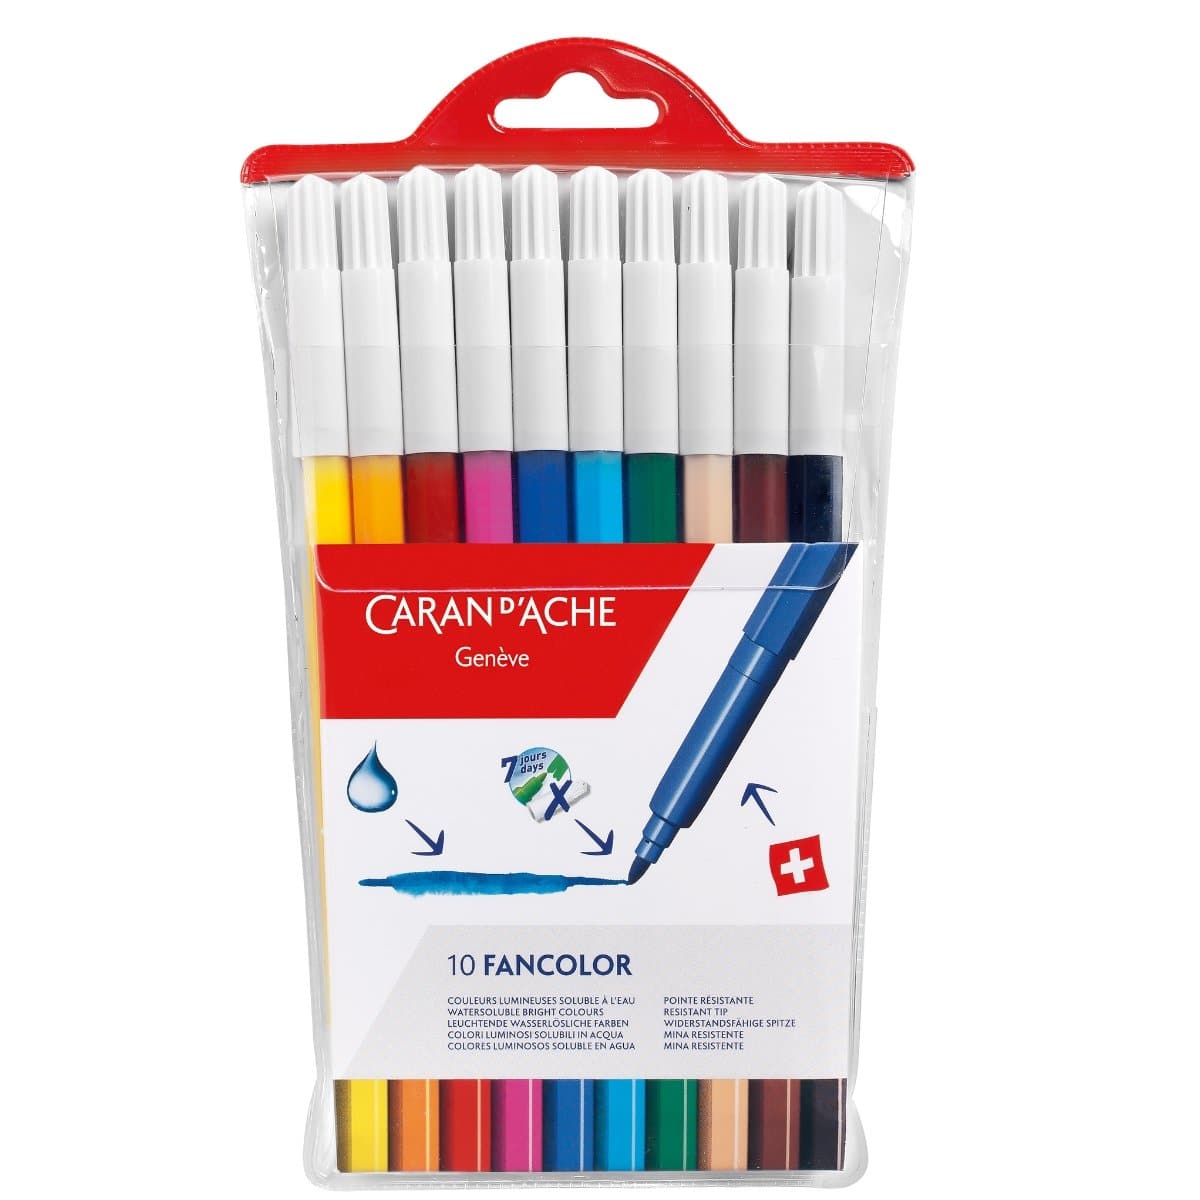 CARAN d'ACHE FANCOLOR Fibre-Tip Pen, medium, 10/pack